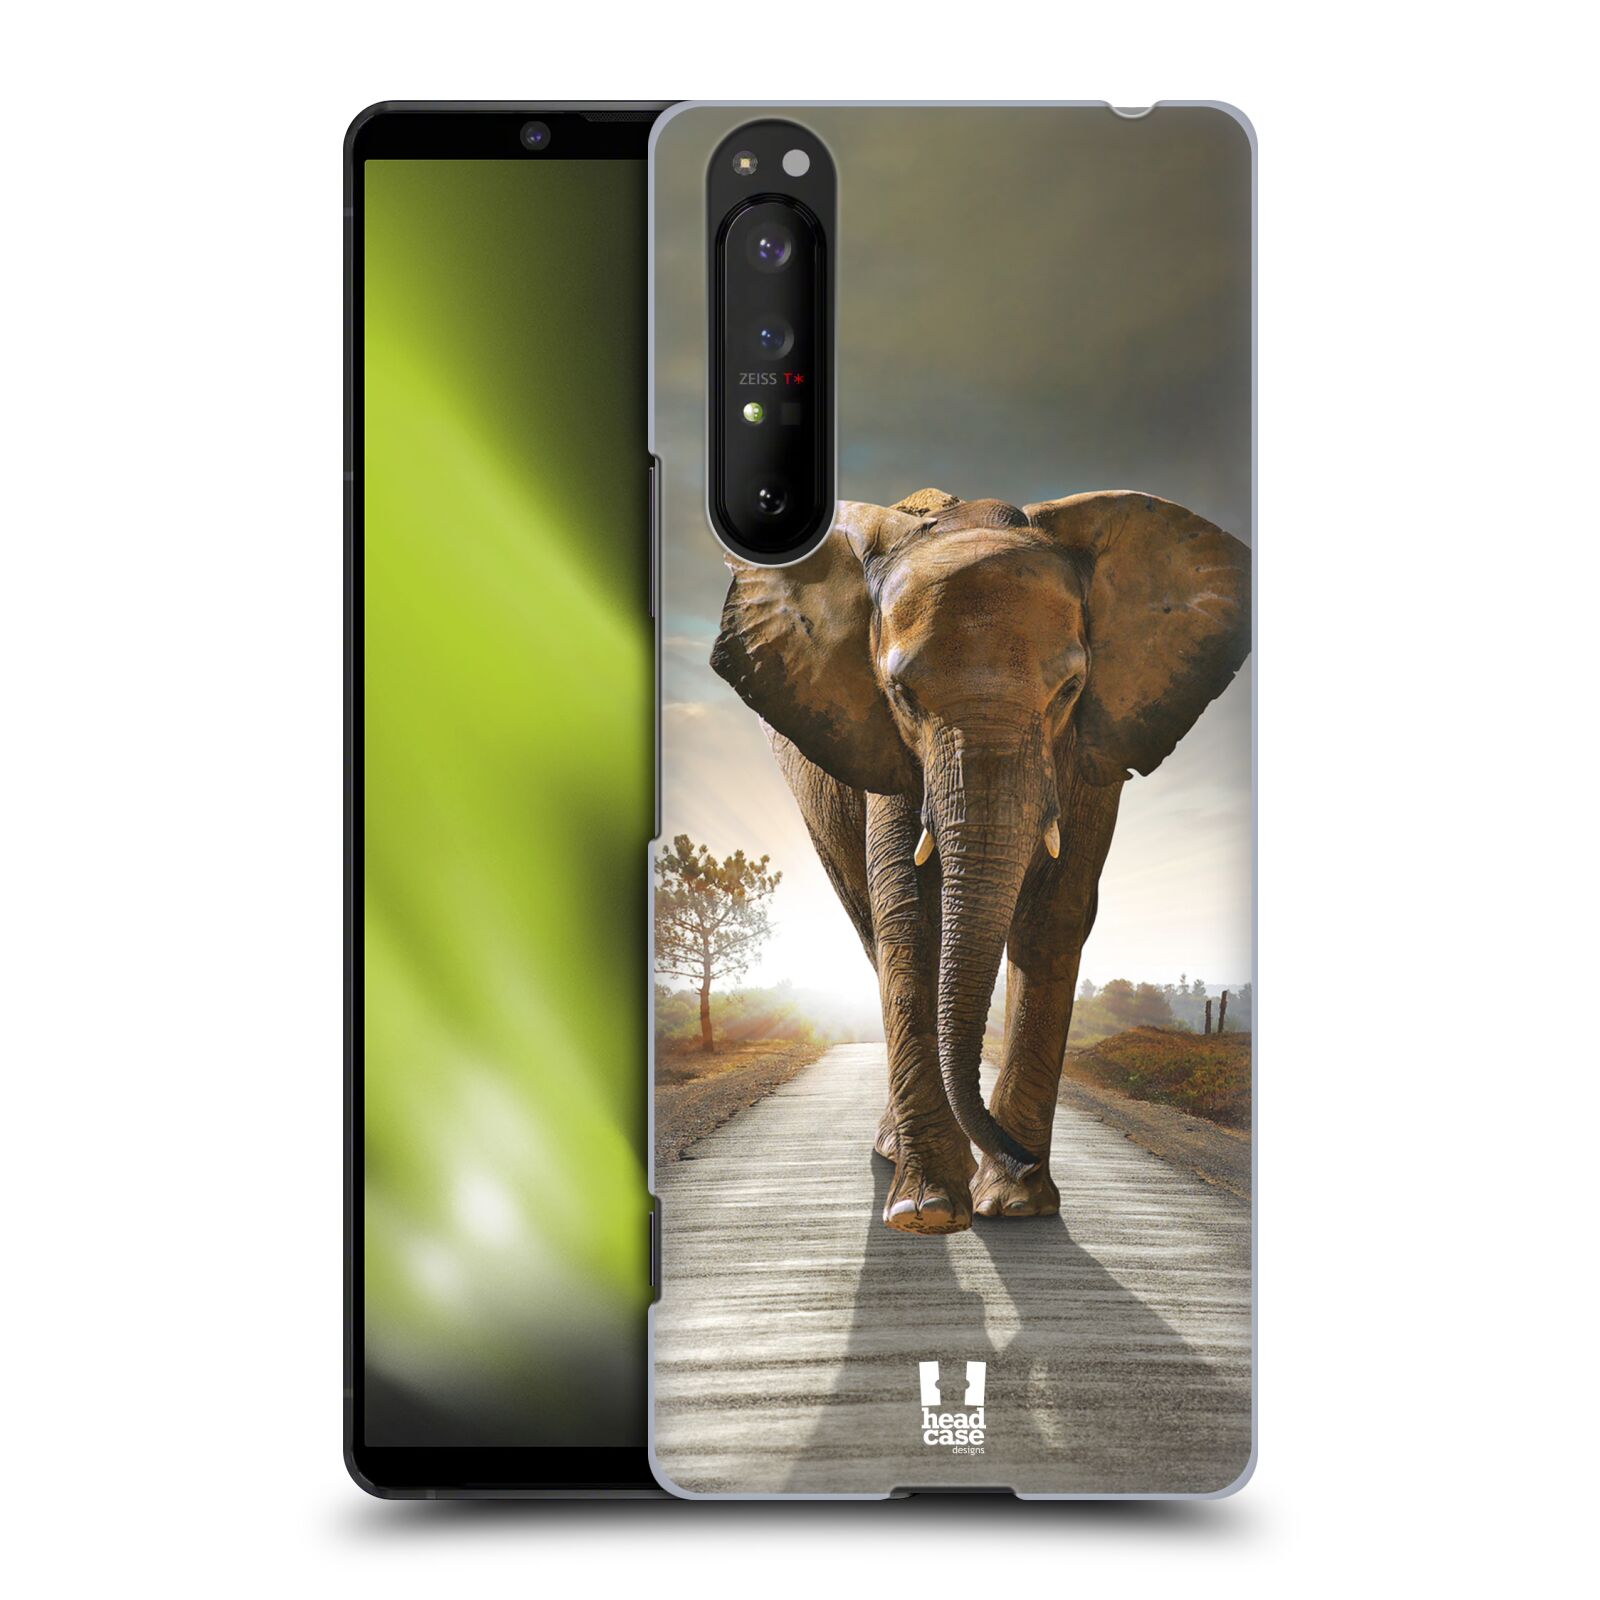 Zadní obal pro mobil Sony Xperia 1 II - HEAD CASE - Svět zvířat kráčející slon